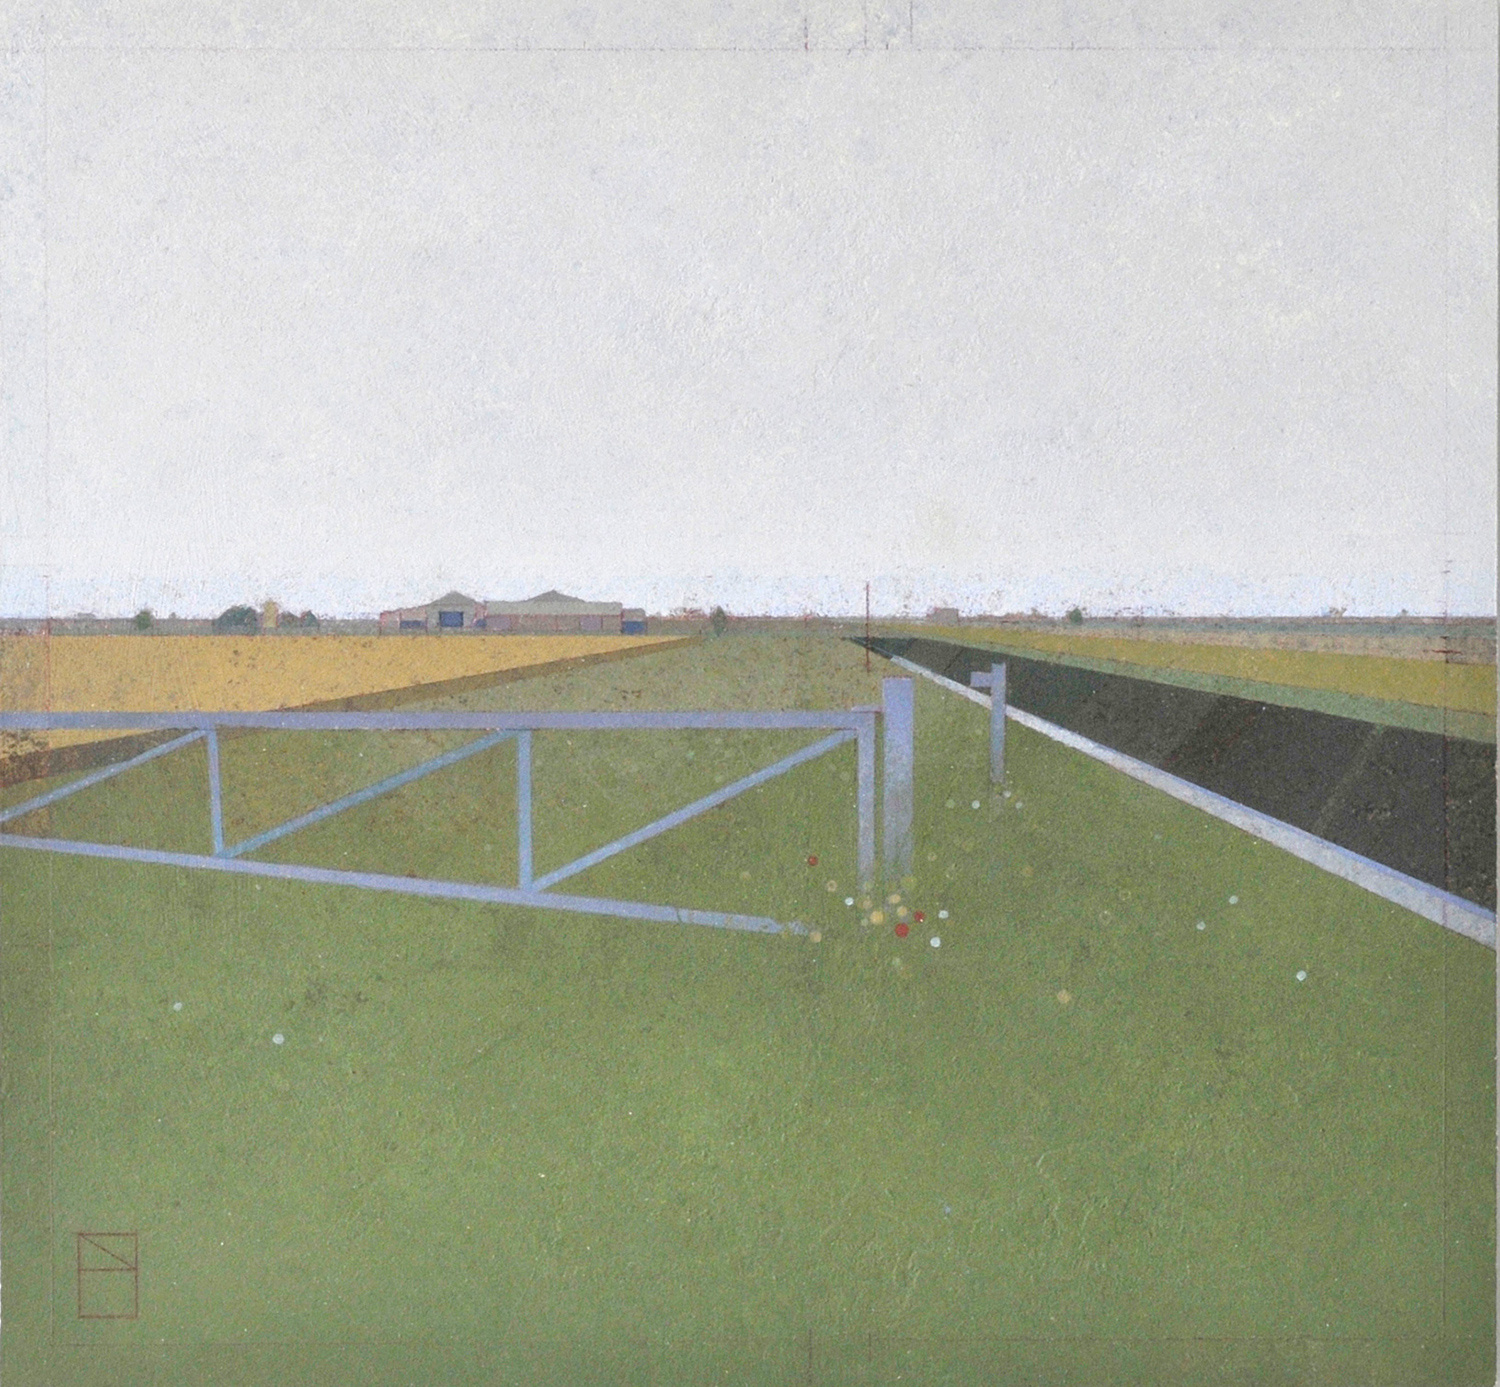 Farm Gate, Fen Landscape by Nick Ellerby